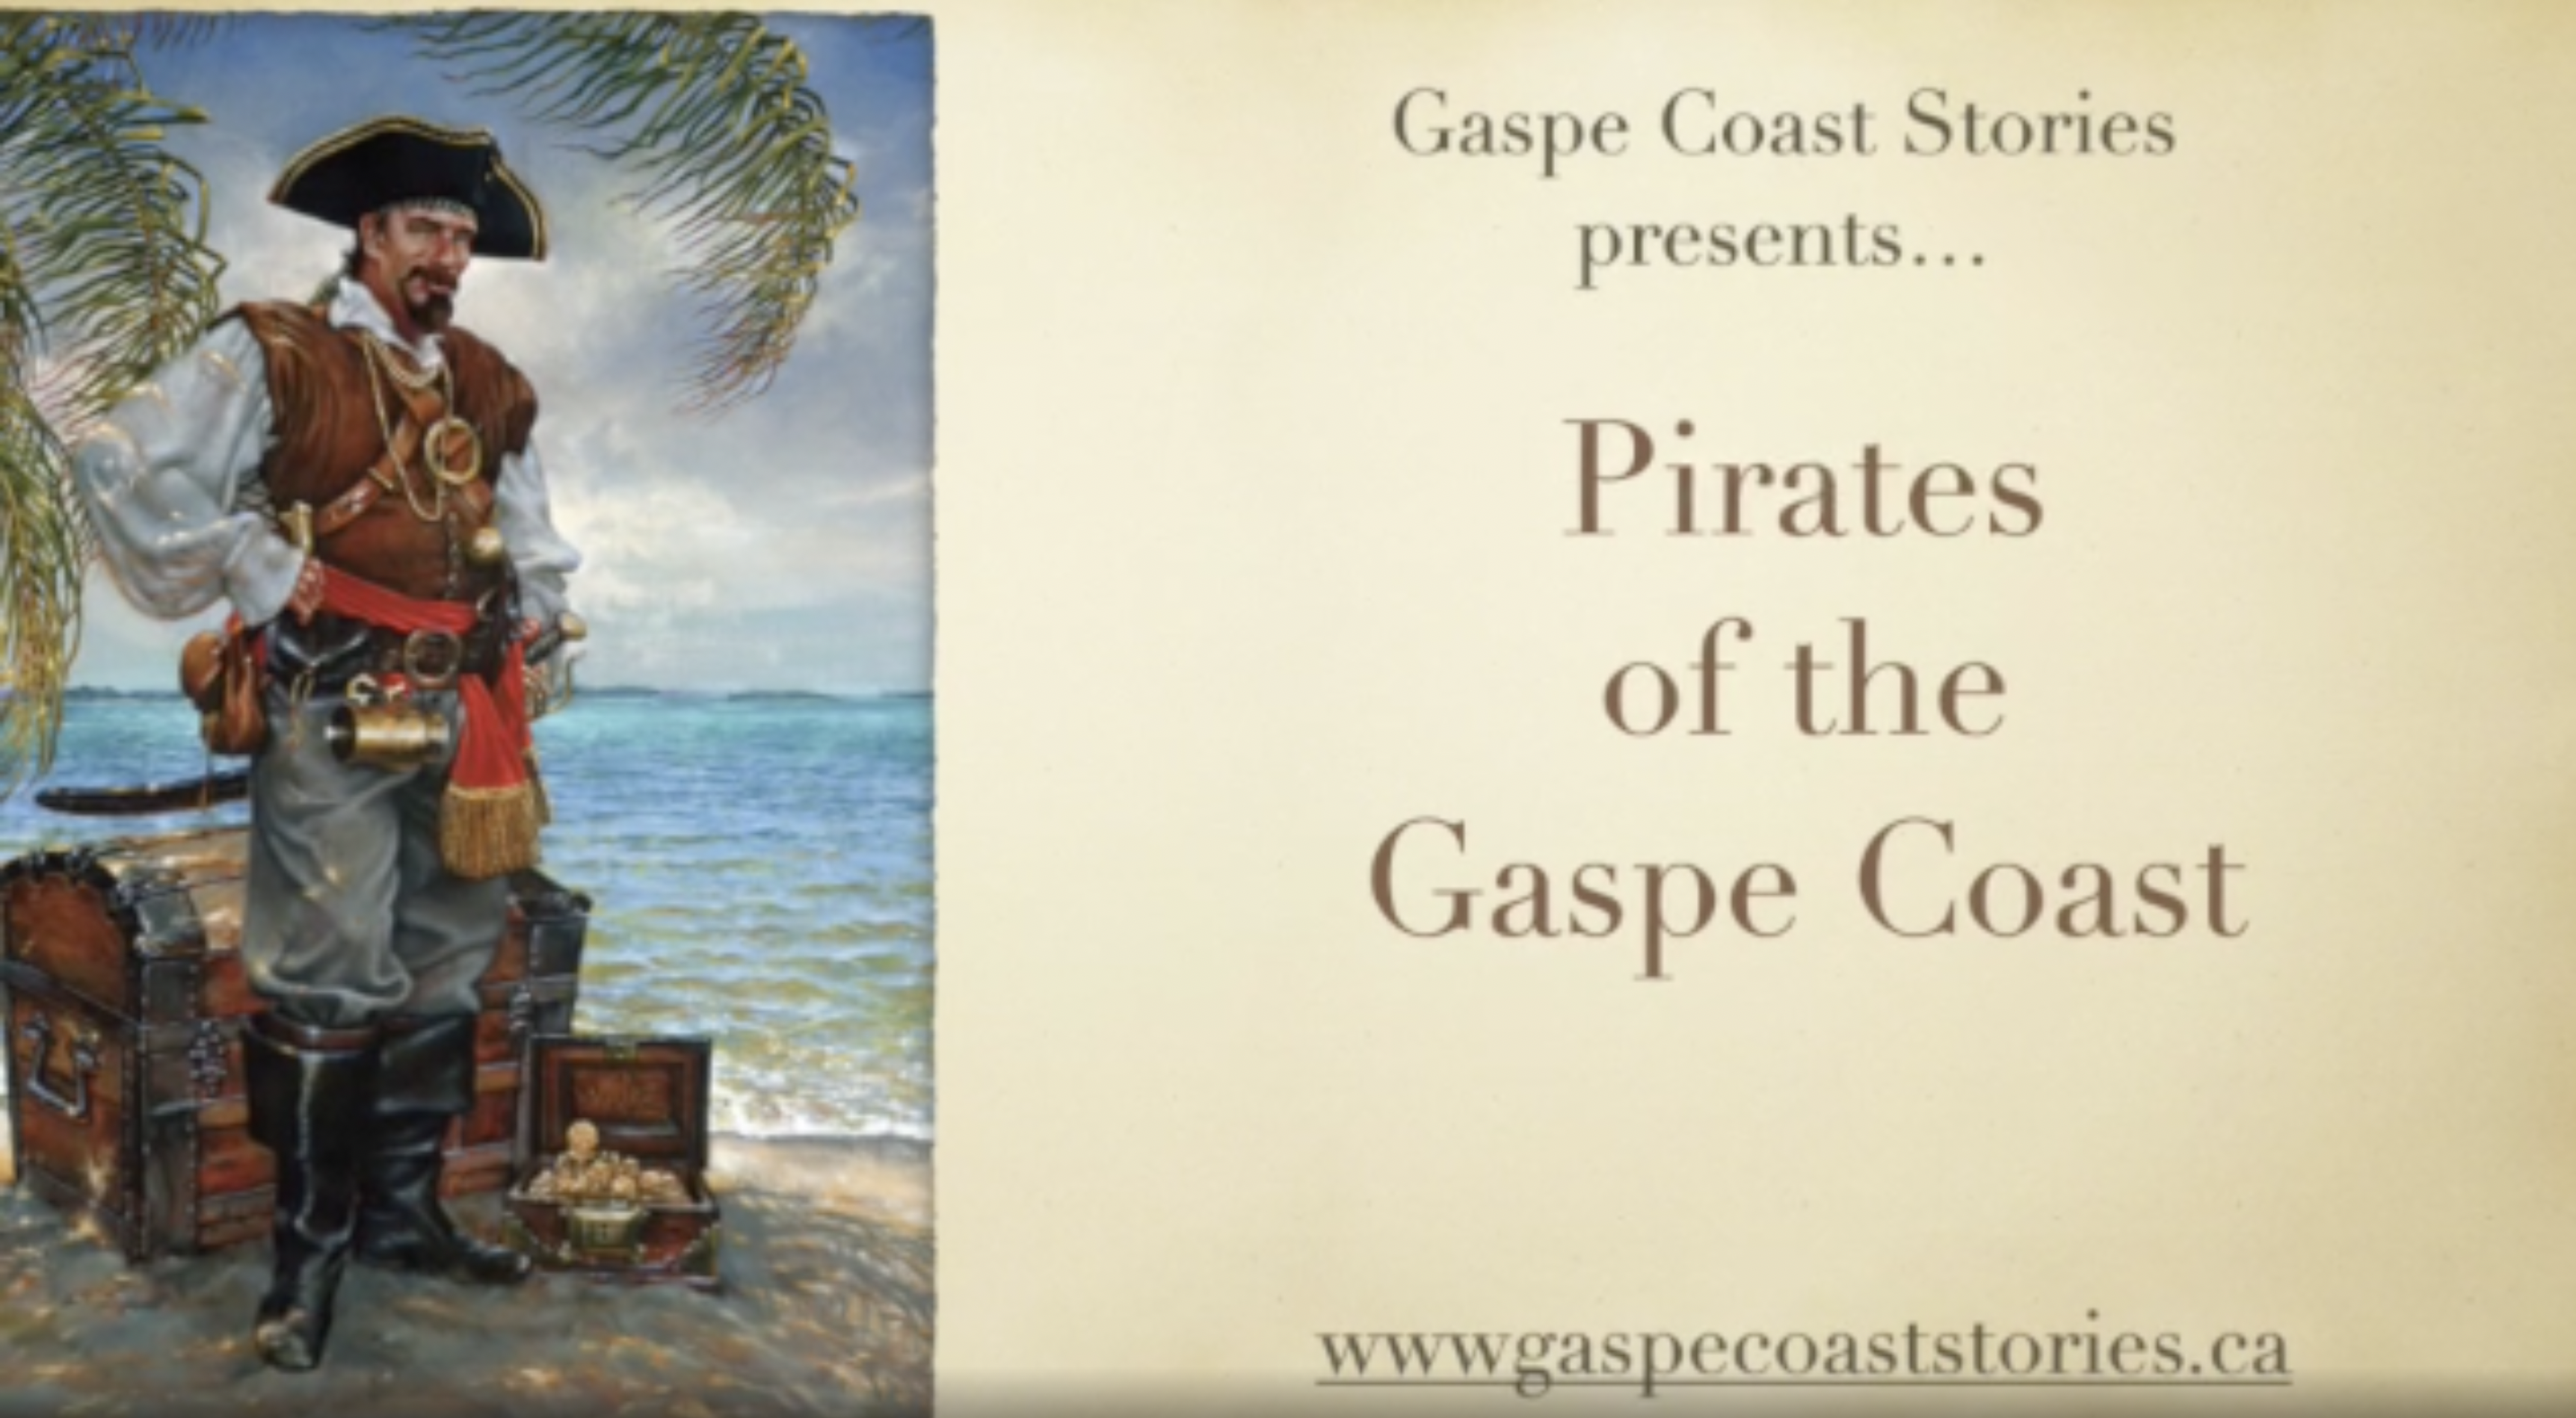 Gaspe Coast Stories